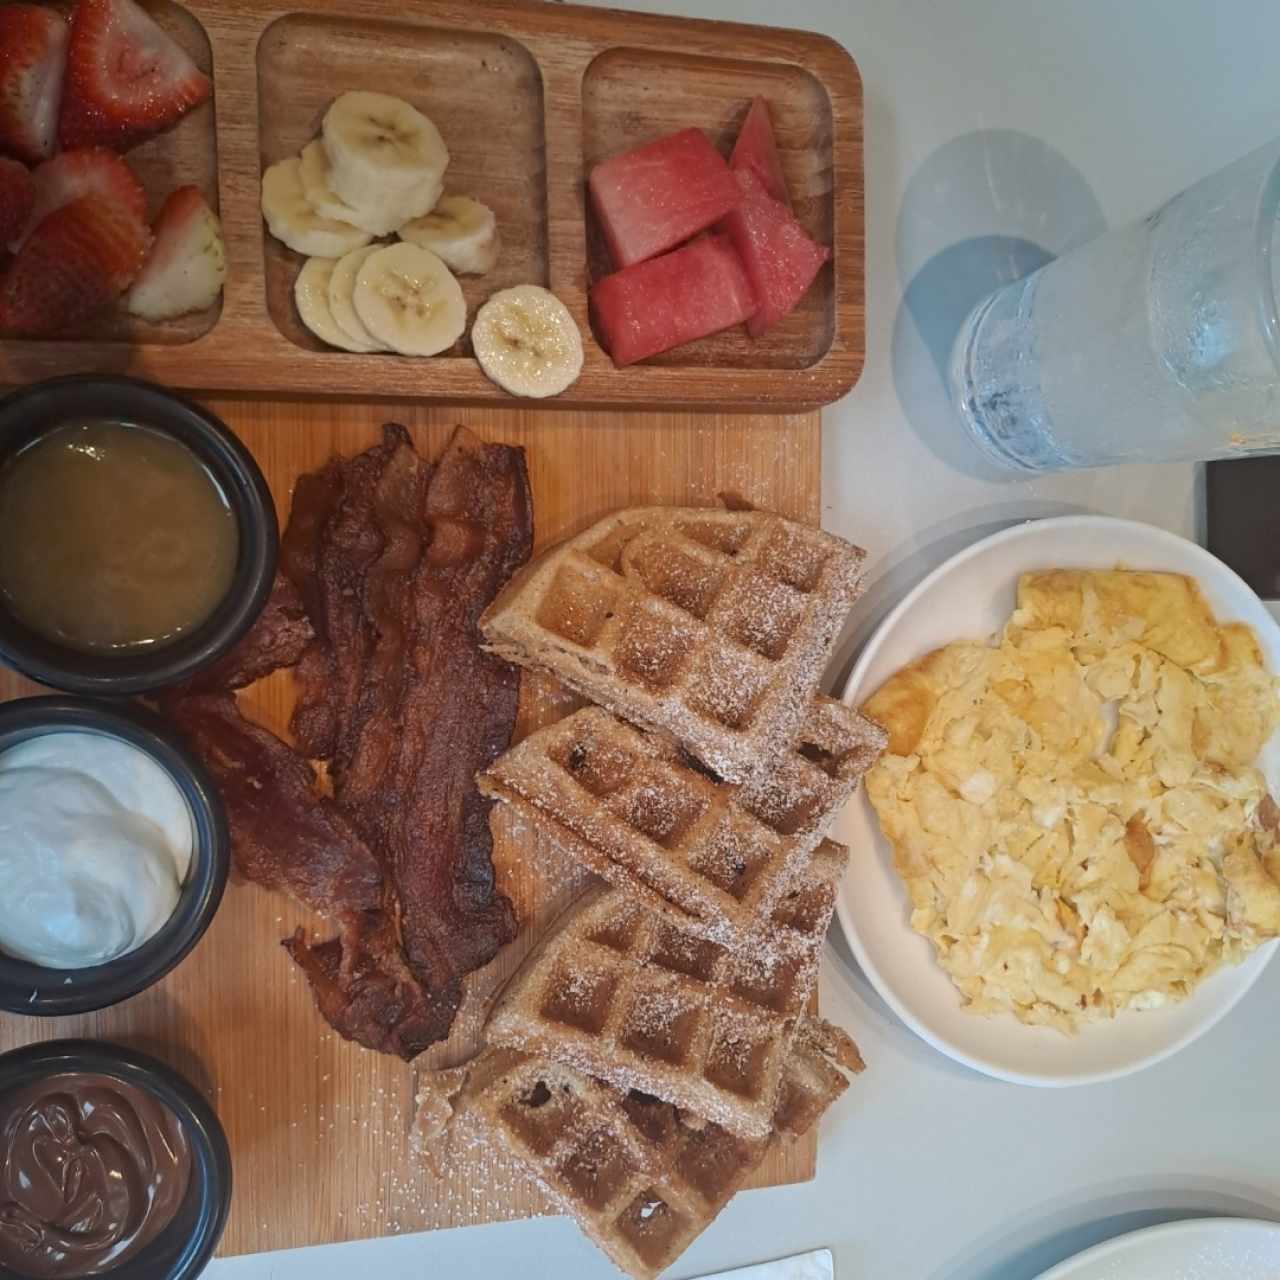 Waffle board